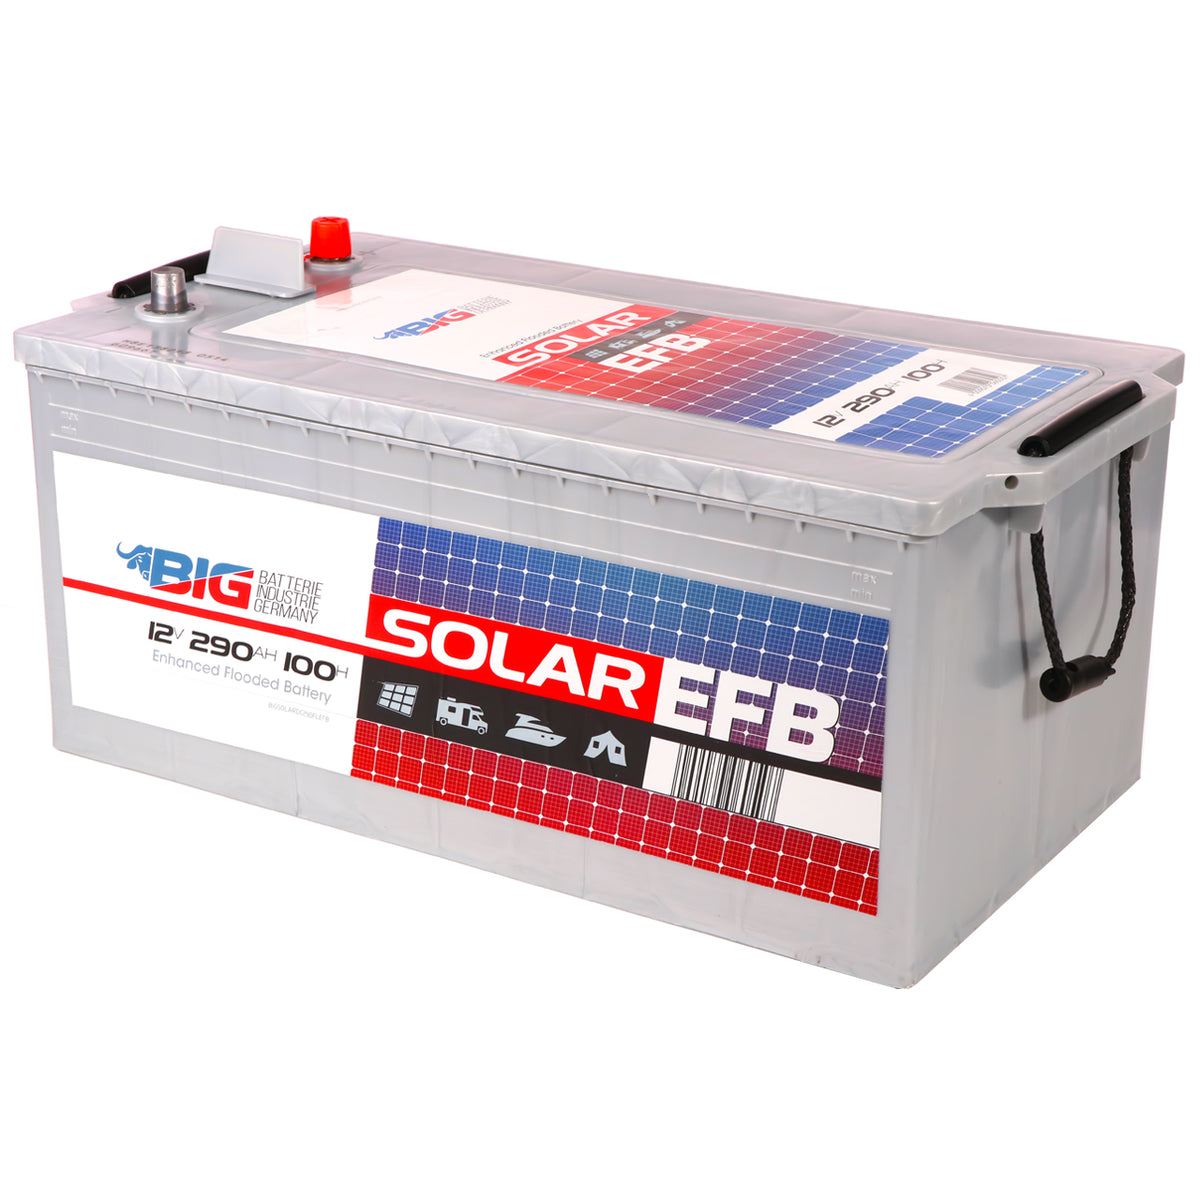 SIGA SOLAR Trocken Solarbatterie 220Ah 12V, 250,89 €